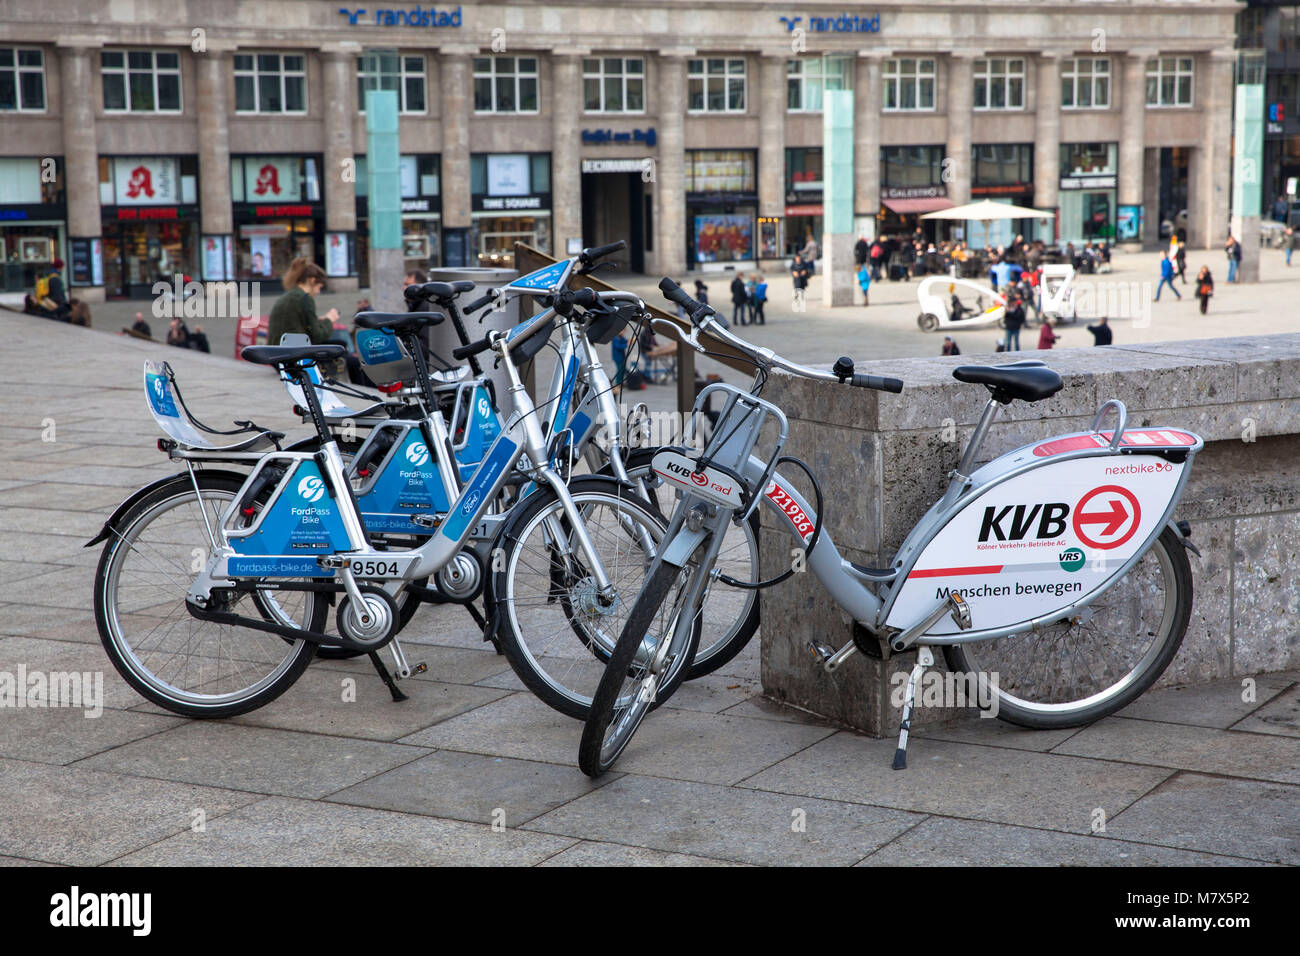 Germania, Colonia, noleggio di biciclette dei concorrenti fornitori Tedesco ferroviaria (Ford-Pass-bike, DB chiamata una bicicletta) e Koelner Verkehrsbetriebe KVB (Colonia pu Foto Stock